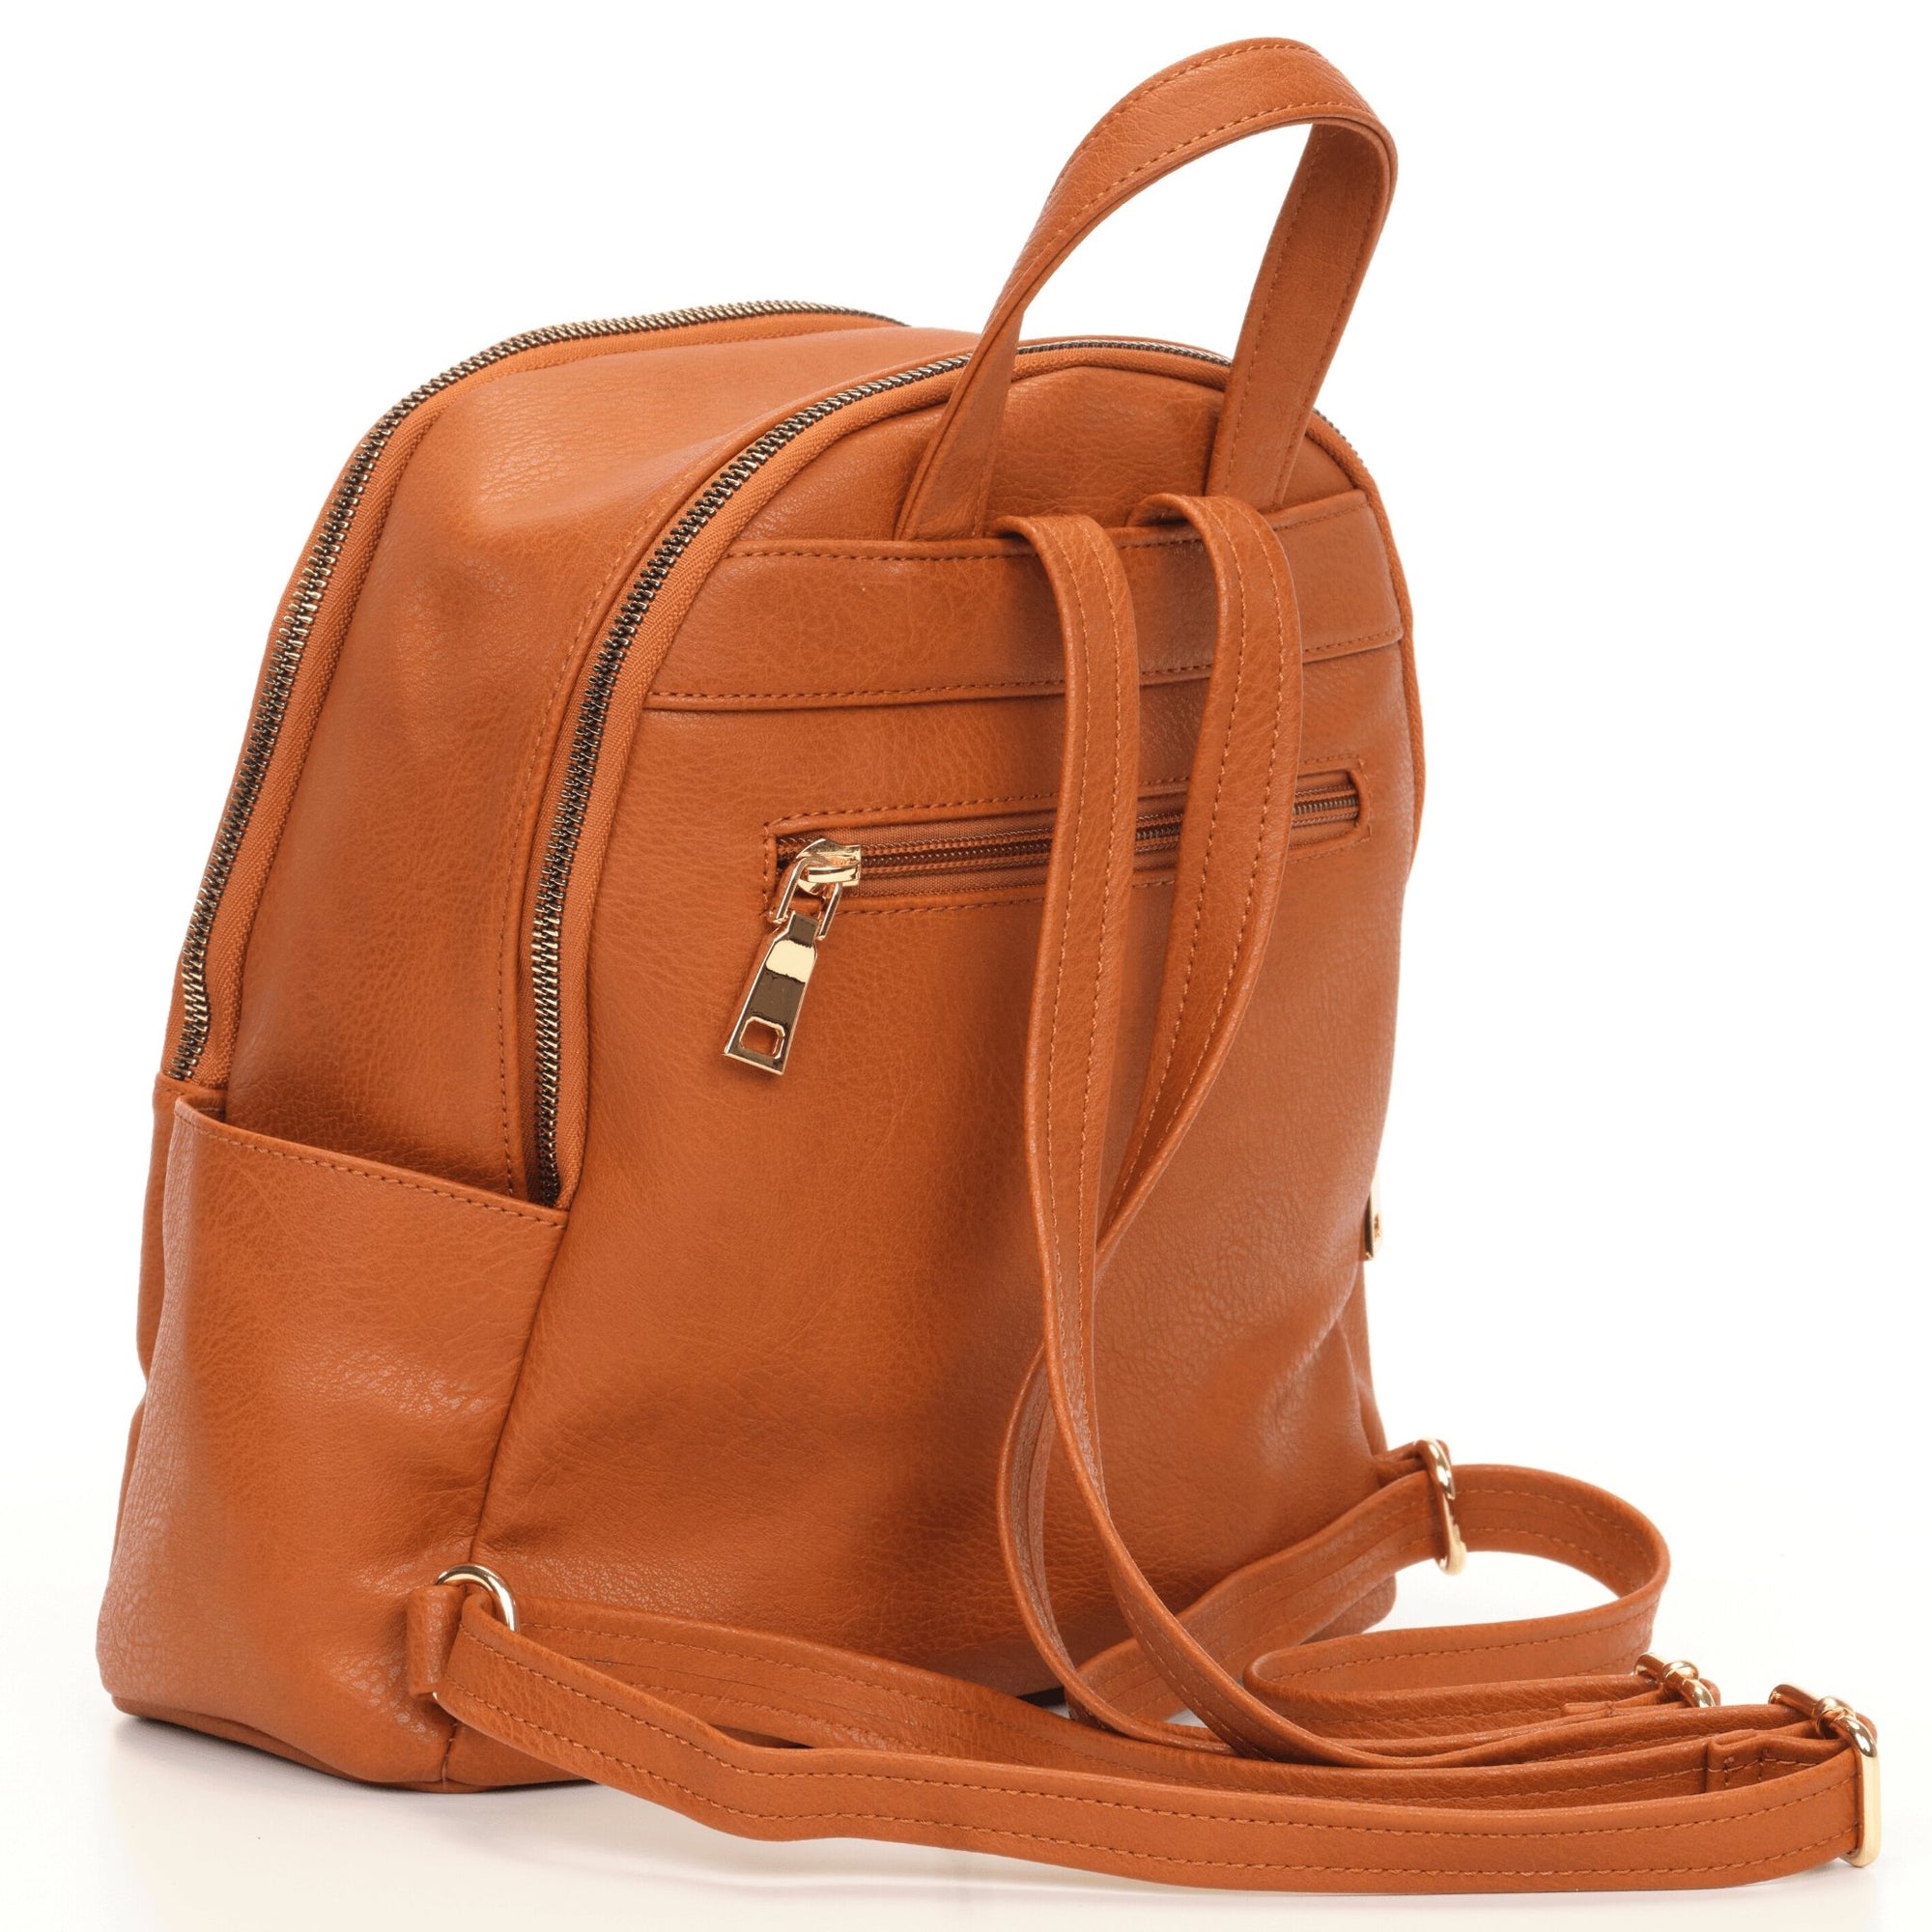 VISMIINTREND Fashion Stylish Vegan Leather Backpack Handbag Sling Shoulder  Purse